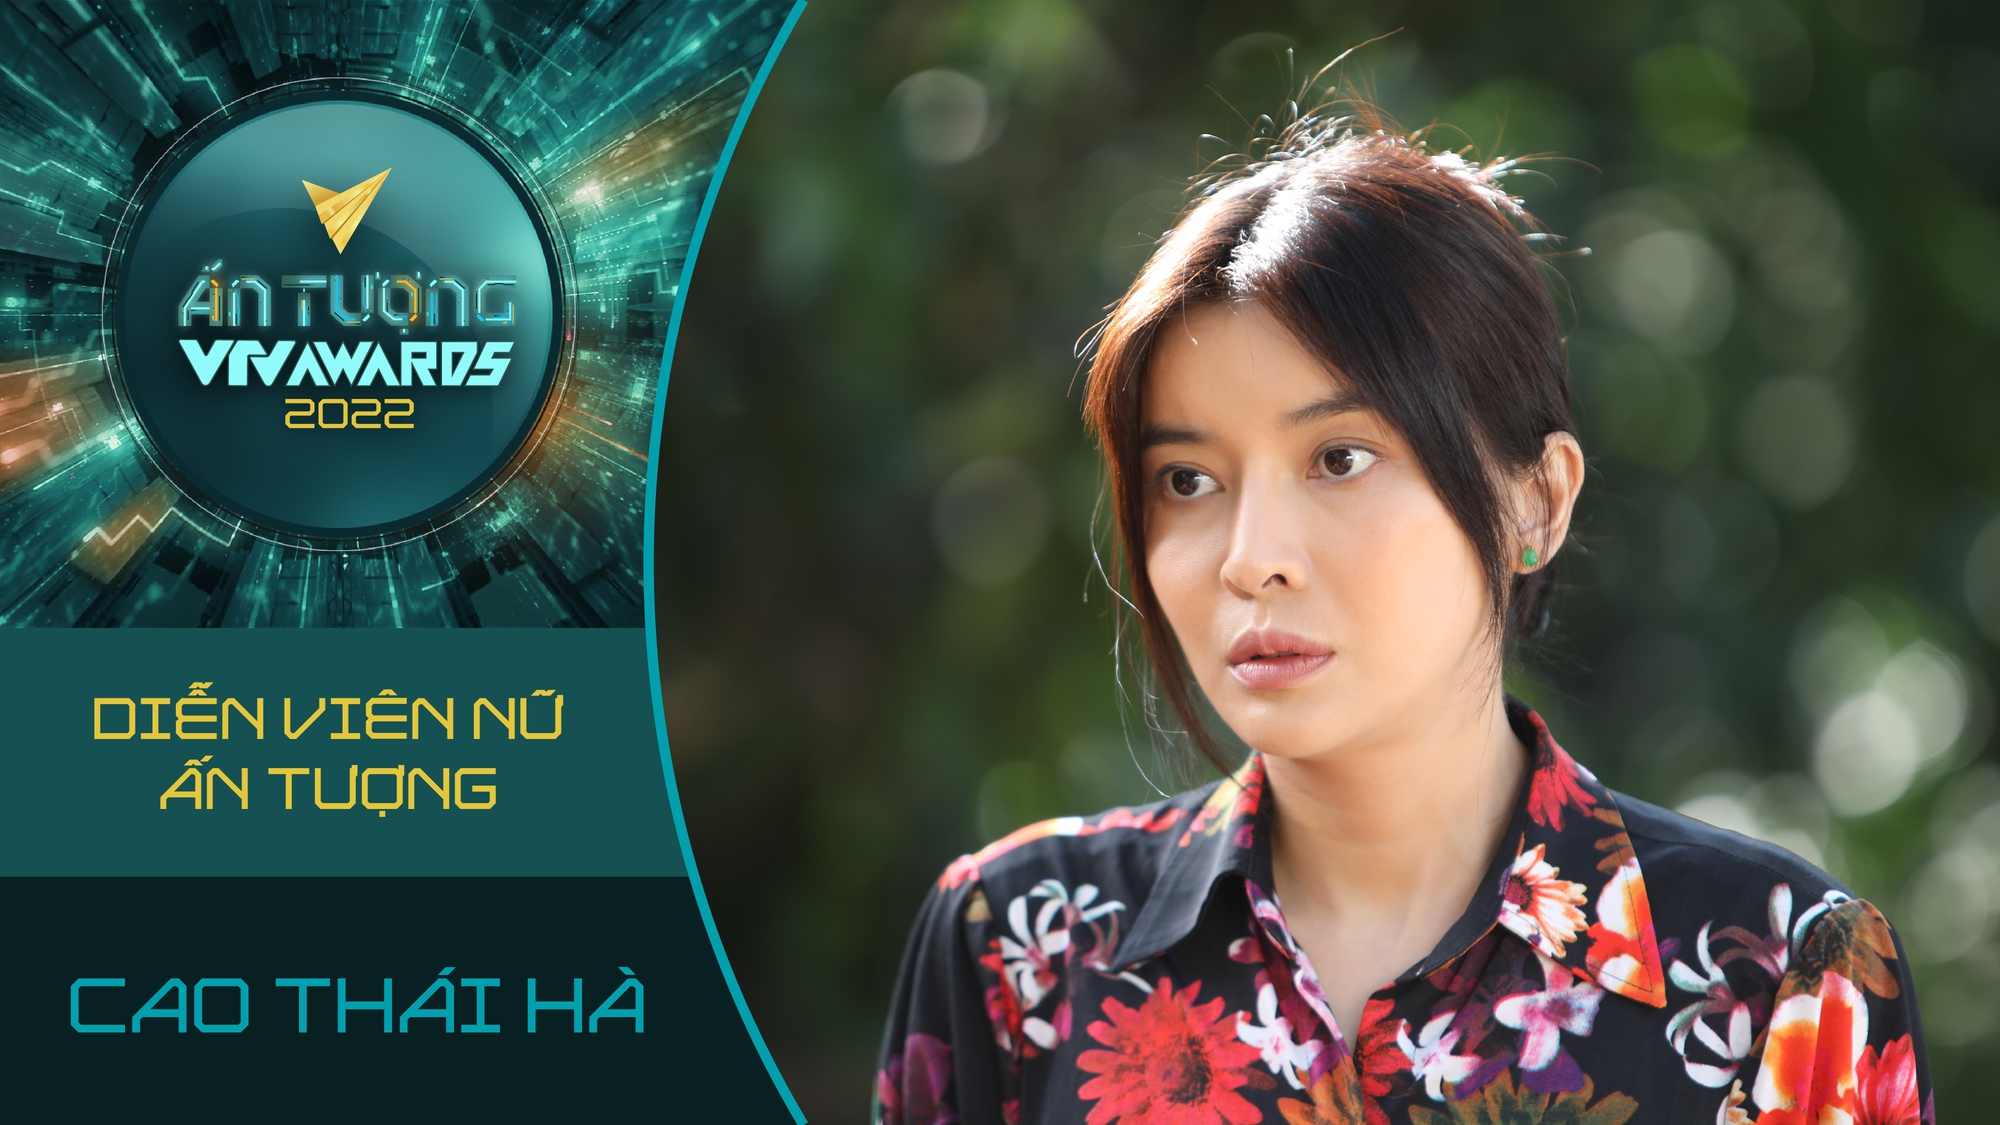 Cao Thái Hà lọt đề cử VTV Awards 2022 nhờ vai phản diện - Ảnh 1.